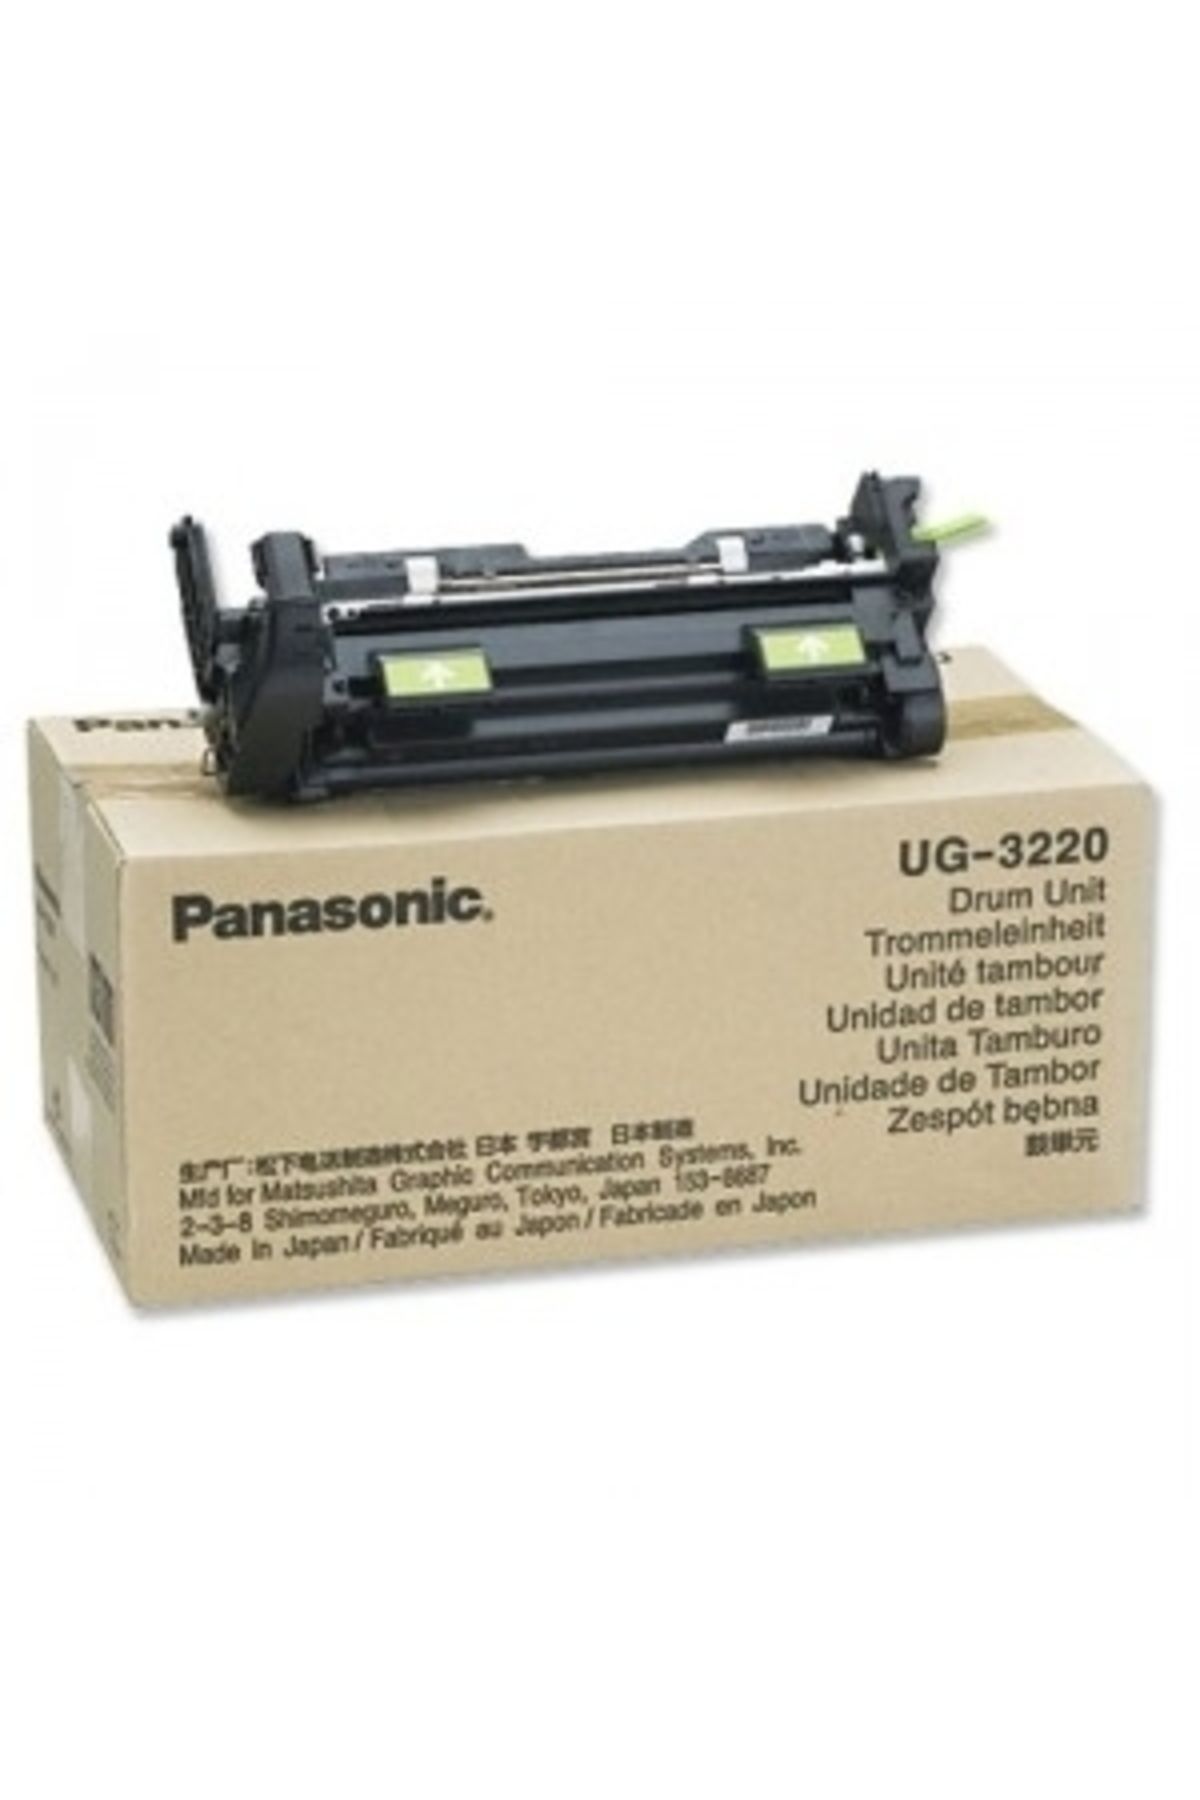 Panasonic Hpzr Ug-3220 Drum Ünitesi